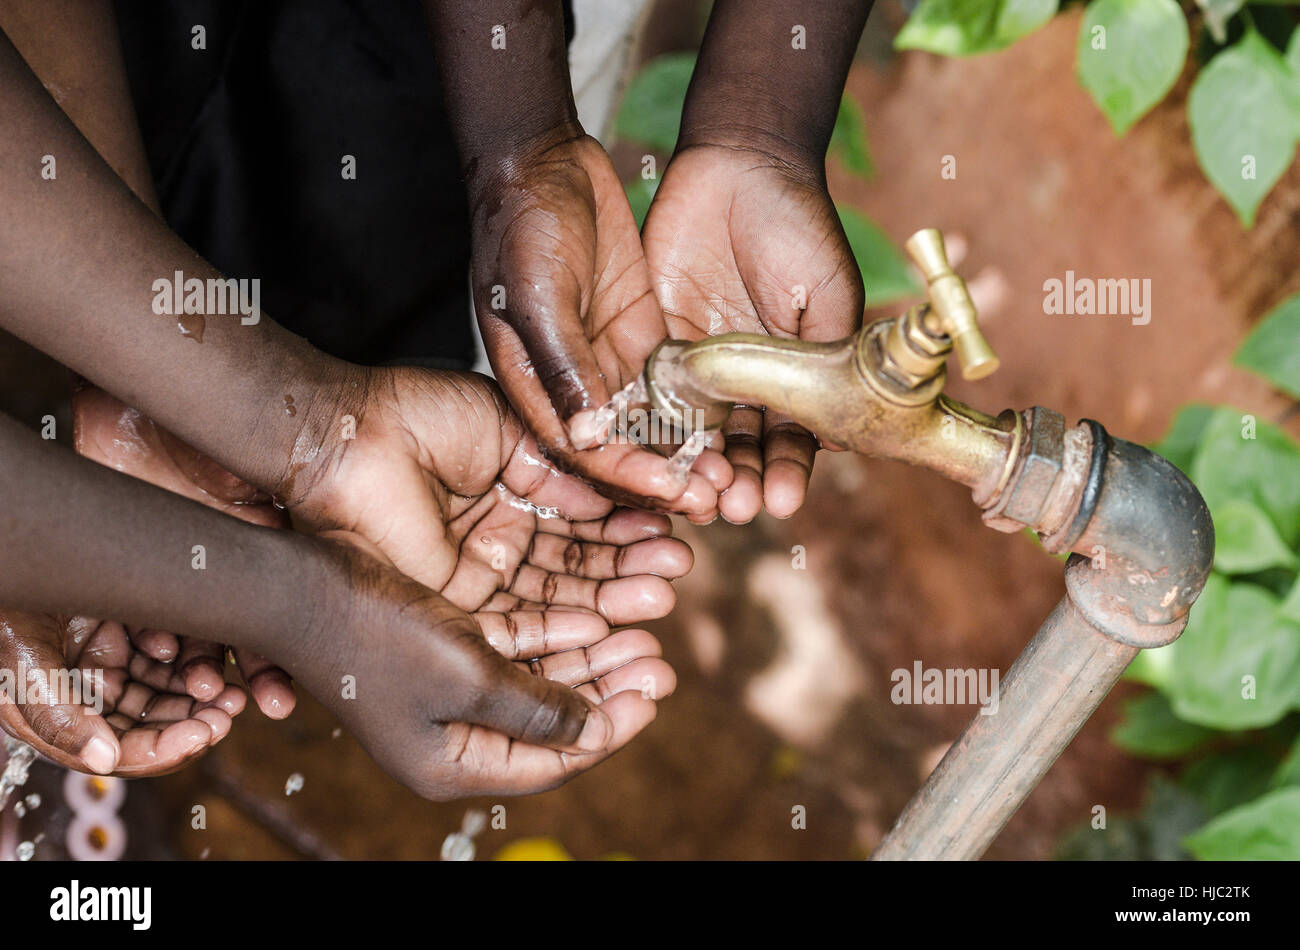 Bambino nero le mani sotto acqua africana tocca problema mondiale Foto Stock